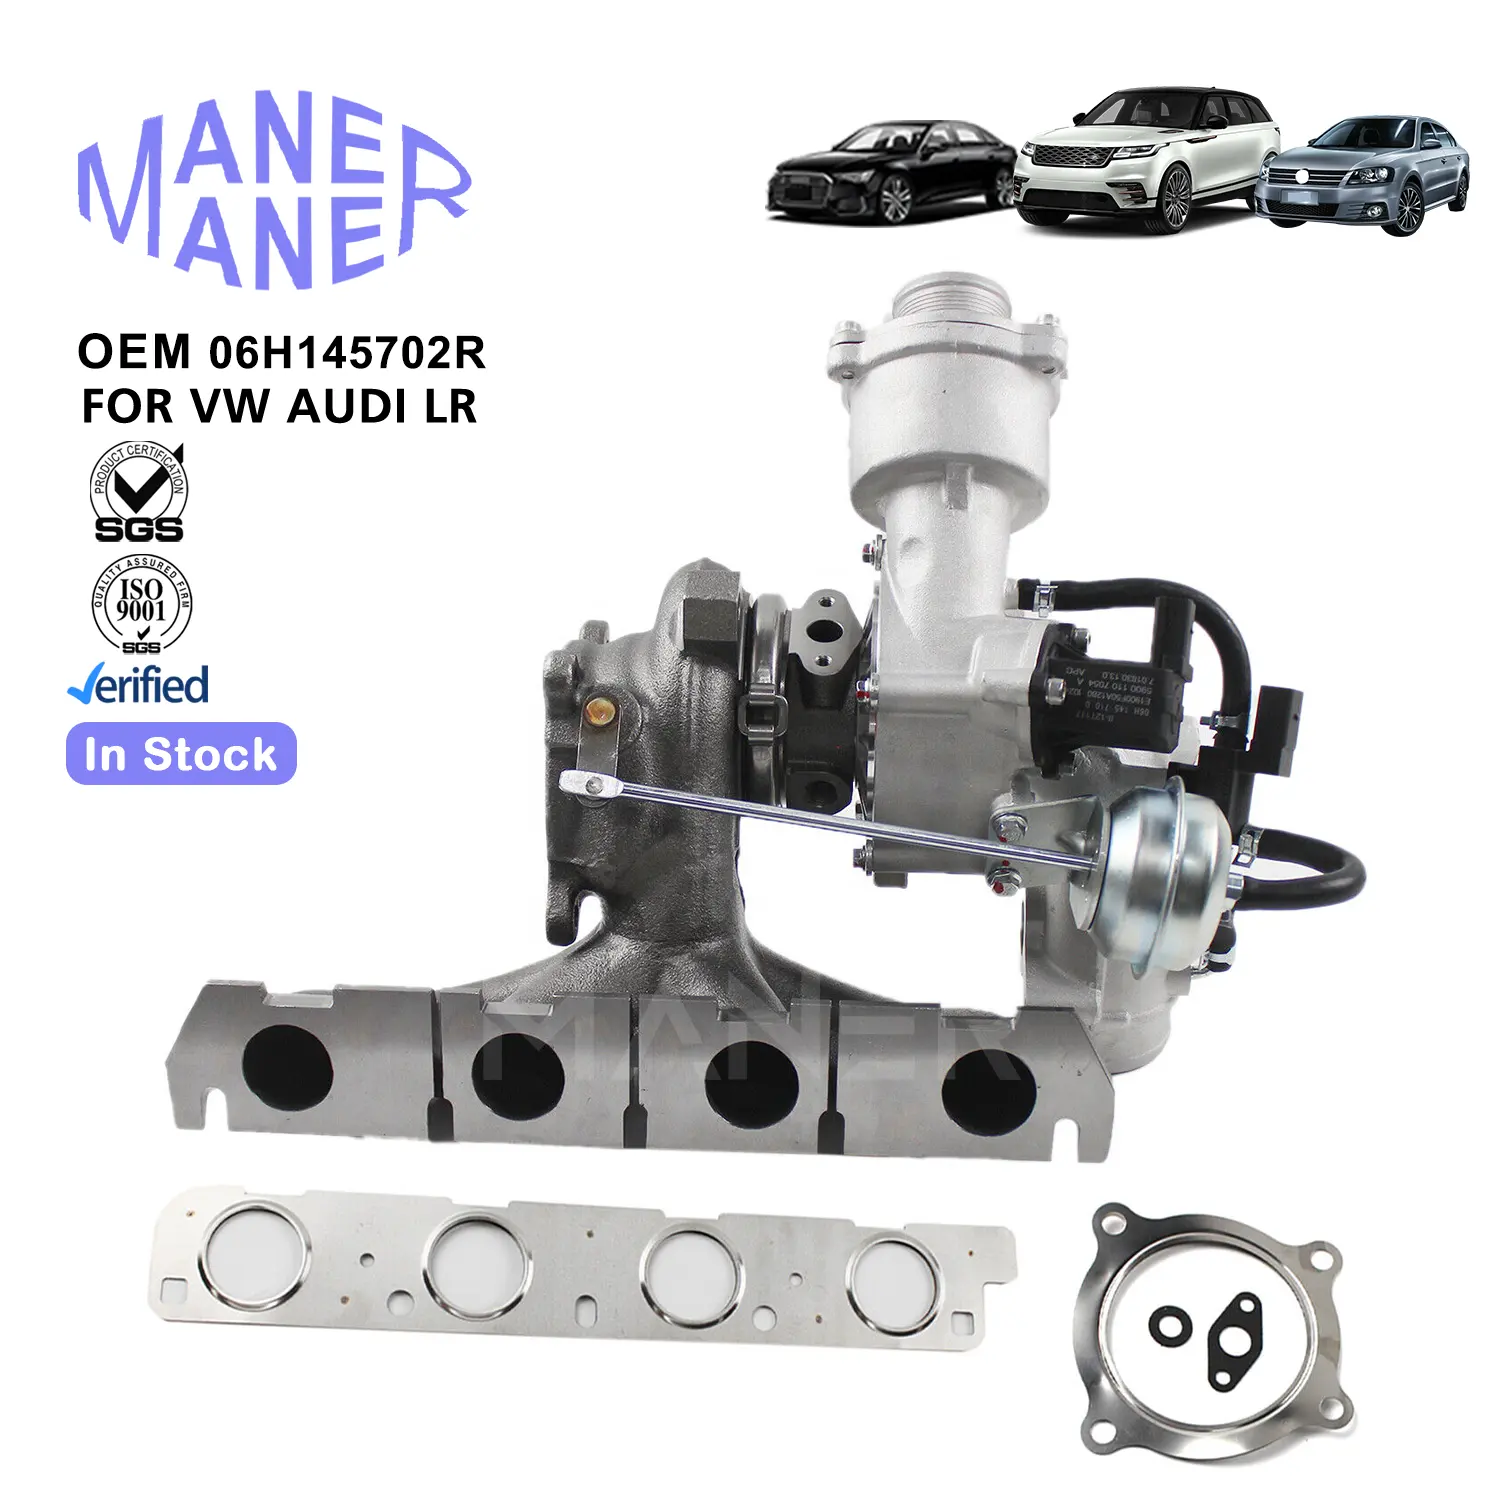 Maner tự động hệ thống động cơ 06h145702r 06h145704m 06h145703s sản xuất cũng được thực hiện Turbo cho VW Audi A4 A5 A6 Q5 VW